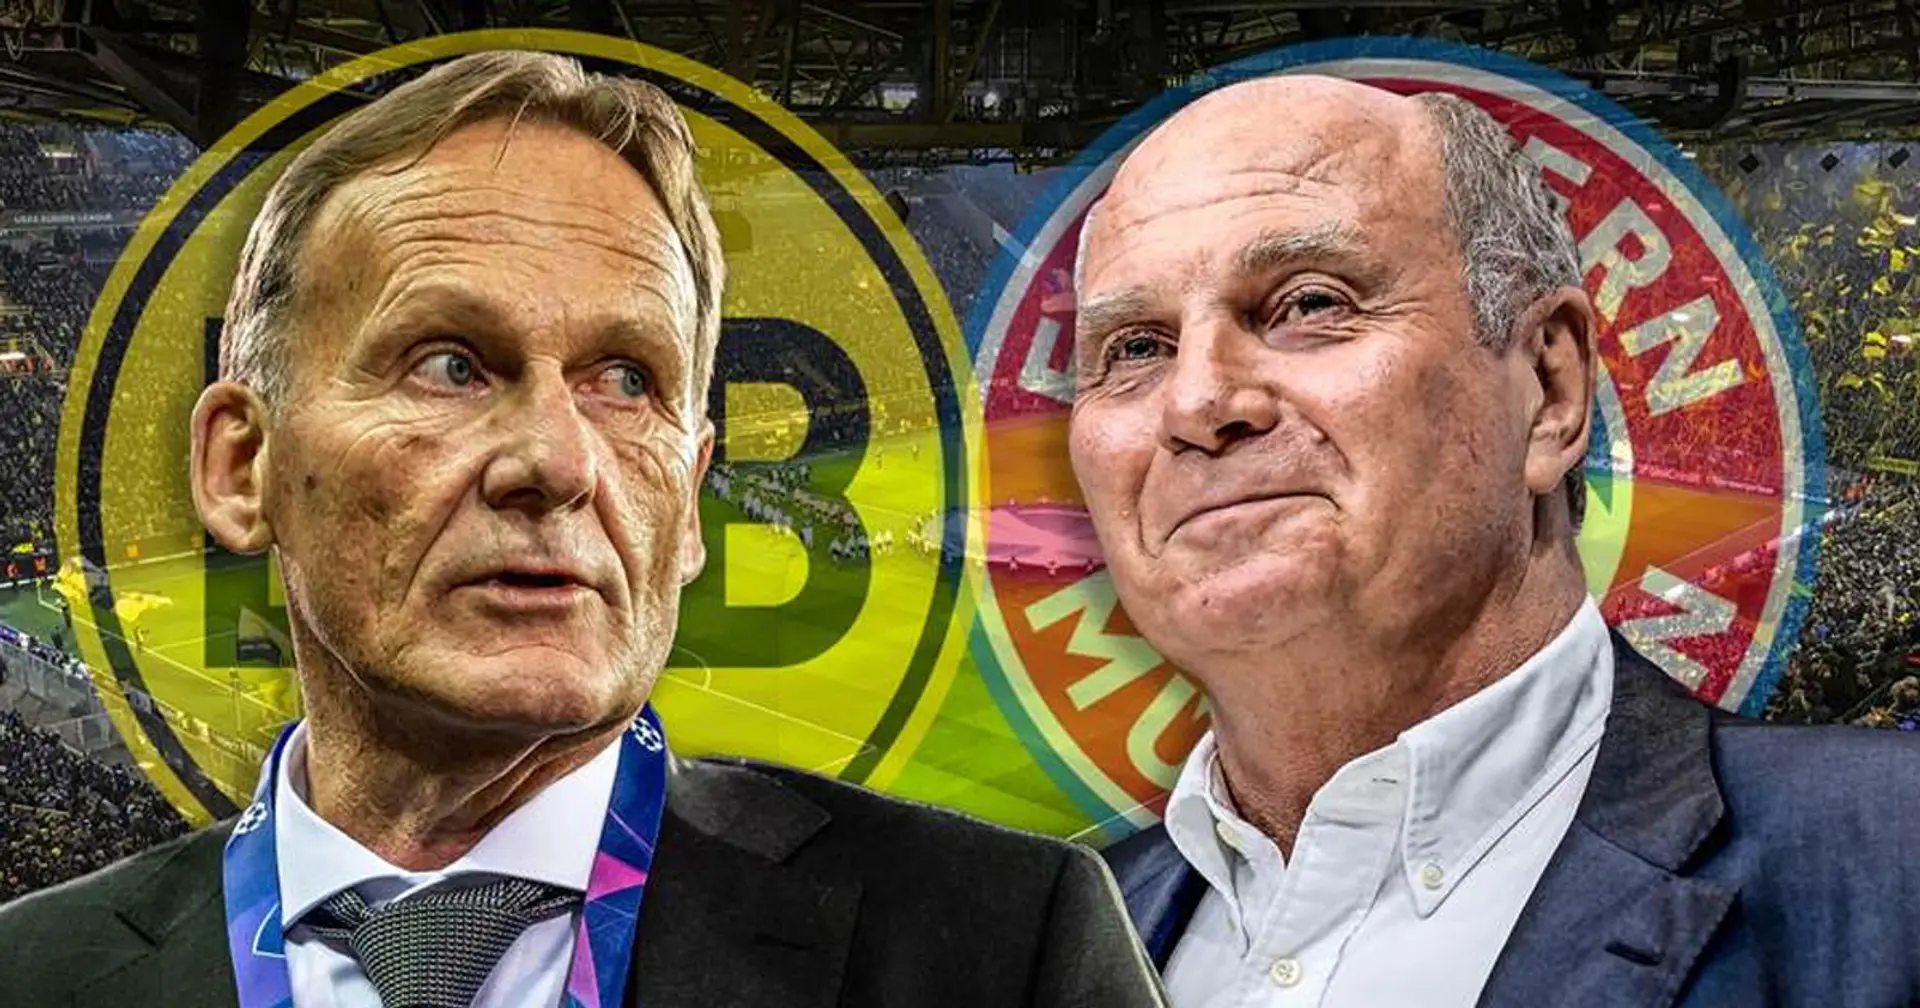 BVB, Union, Gladbach und mehr: Diese Vereine hat der FCB vor dem Aussterben gerettet